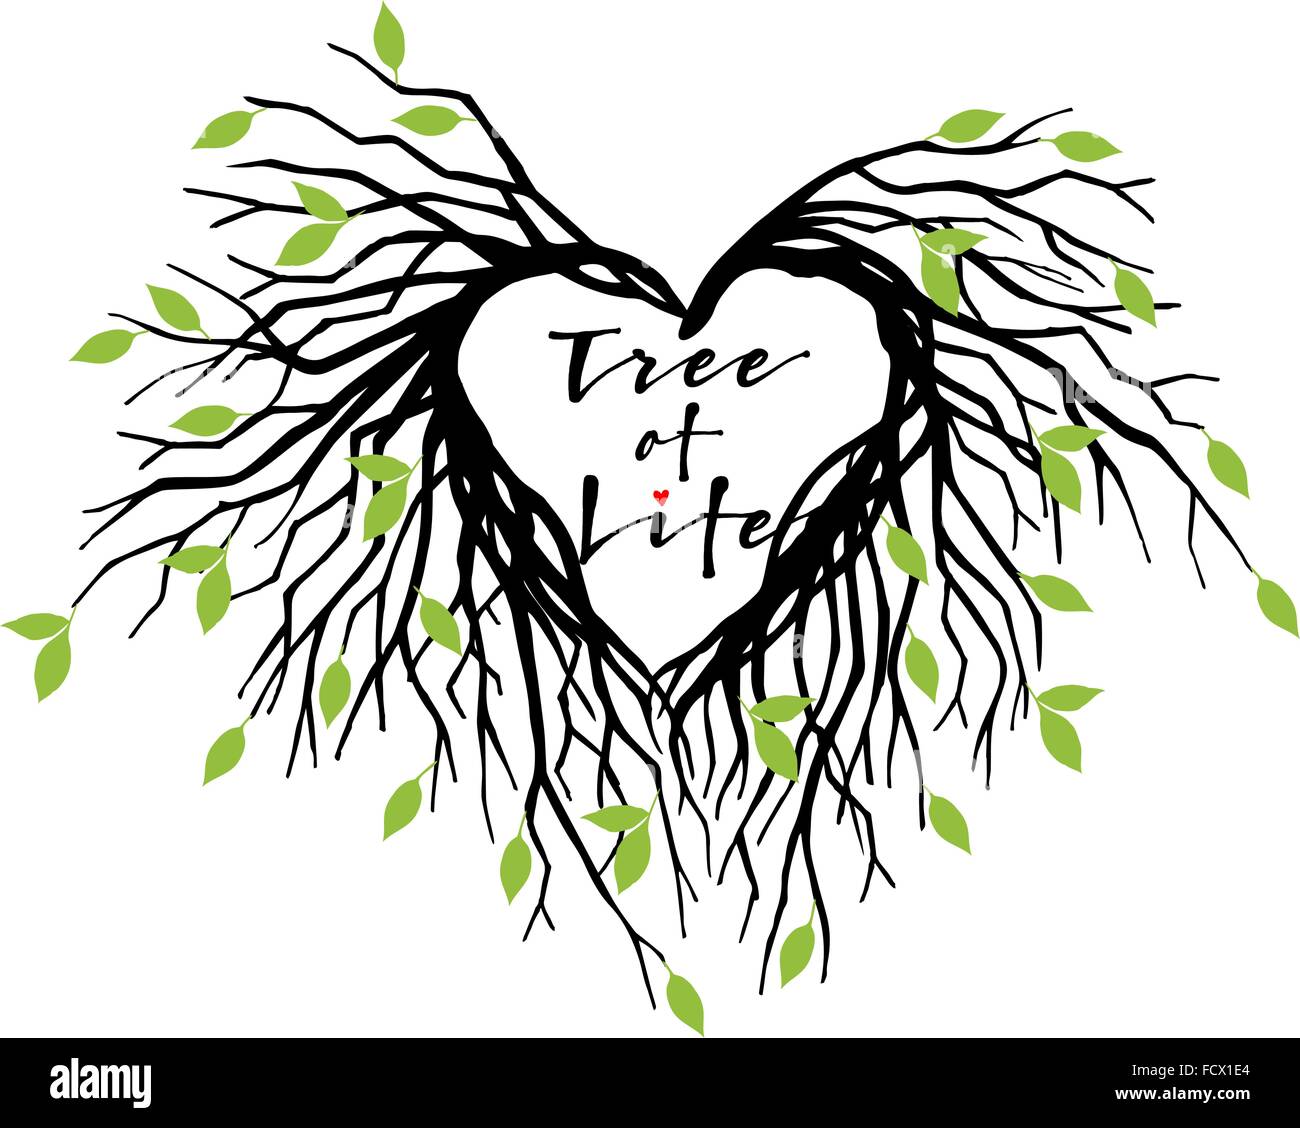 Baum des Lebens, Herz geformten Äste mit grünen Blättern, Vektor-illustration Stock Vektor